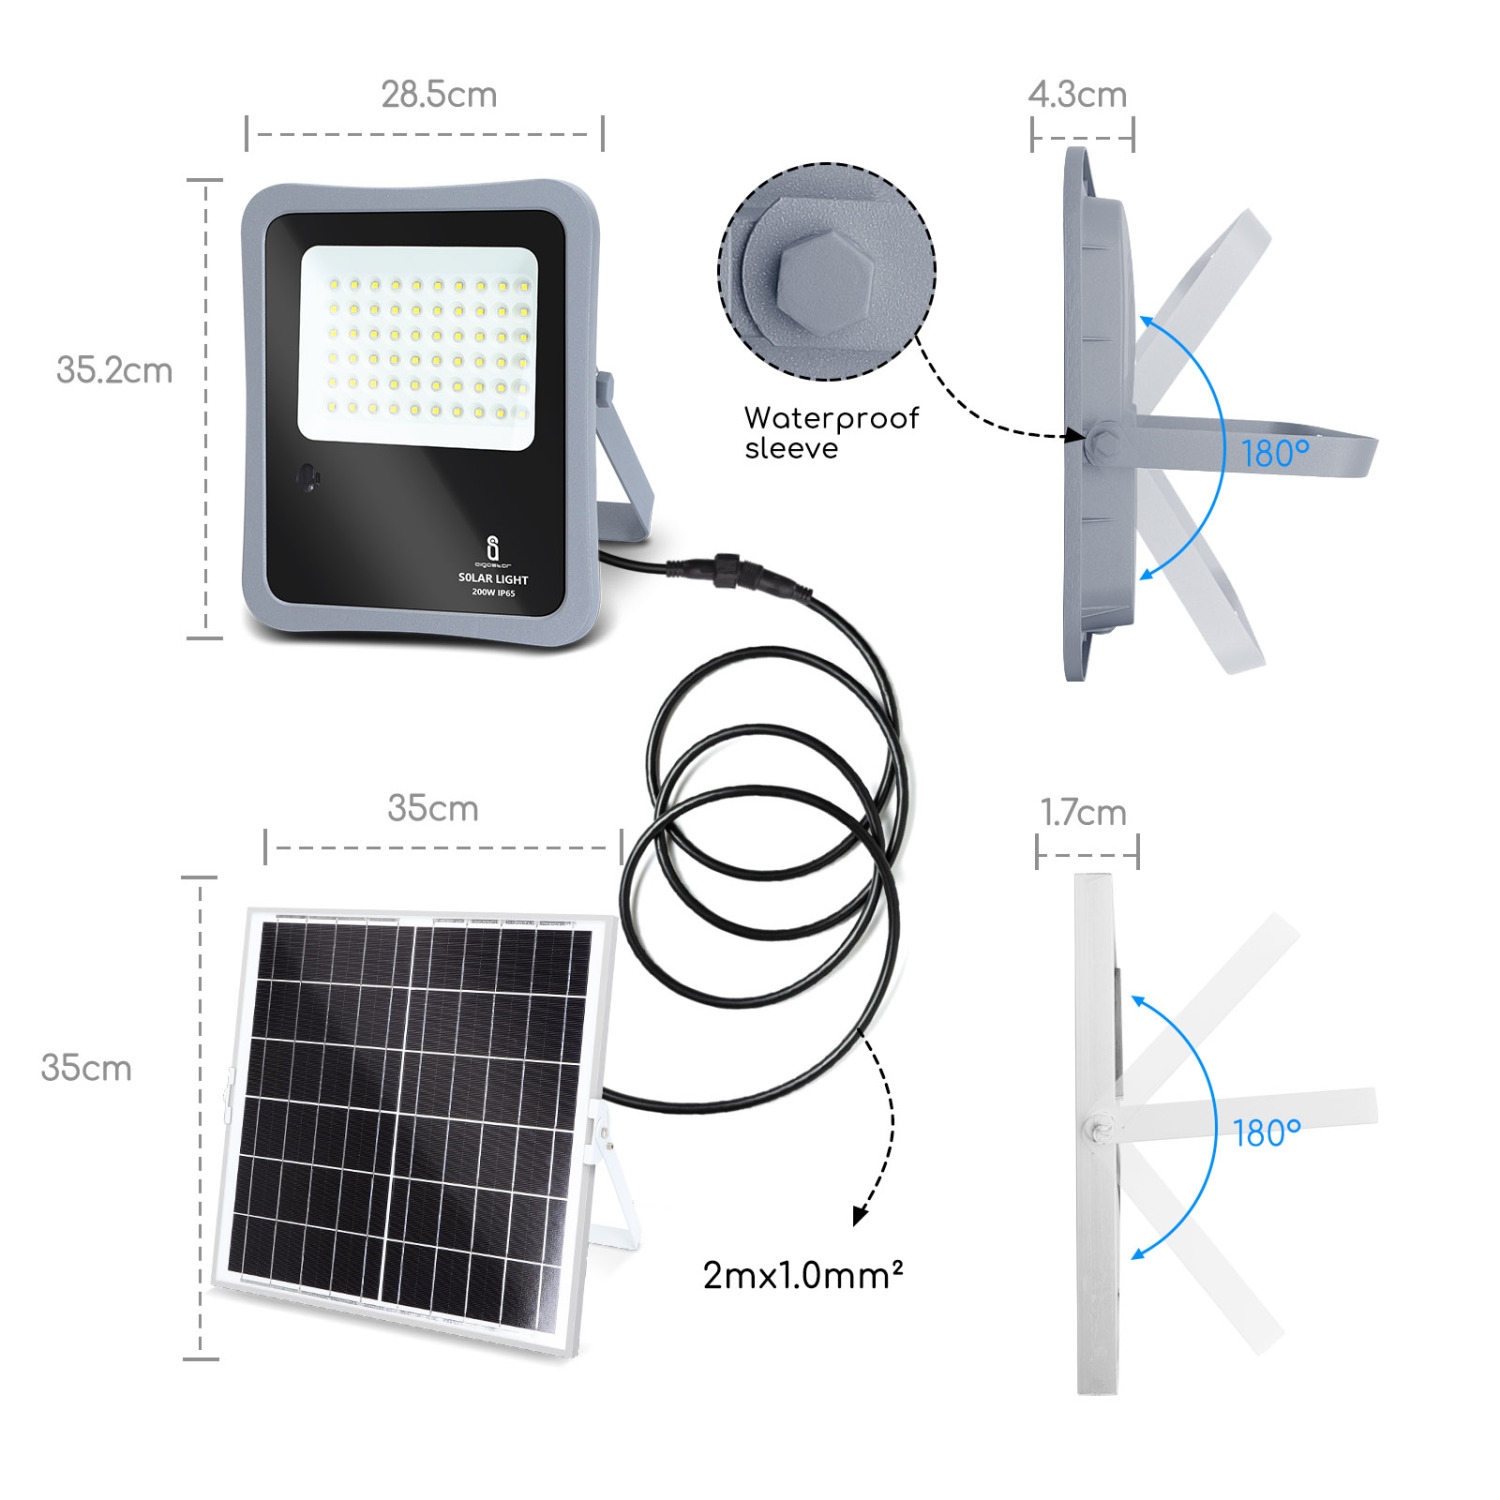 Aigostar - Faretto solare LED per esterni con telecomando da 200W, luce bianca 6500k. Faretto solare crepuscolare con funzione timer, IP65 resistenze alla pioggia